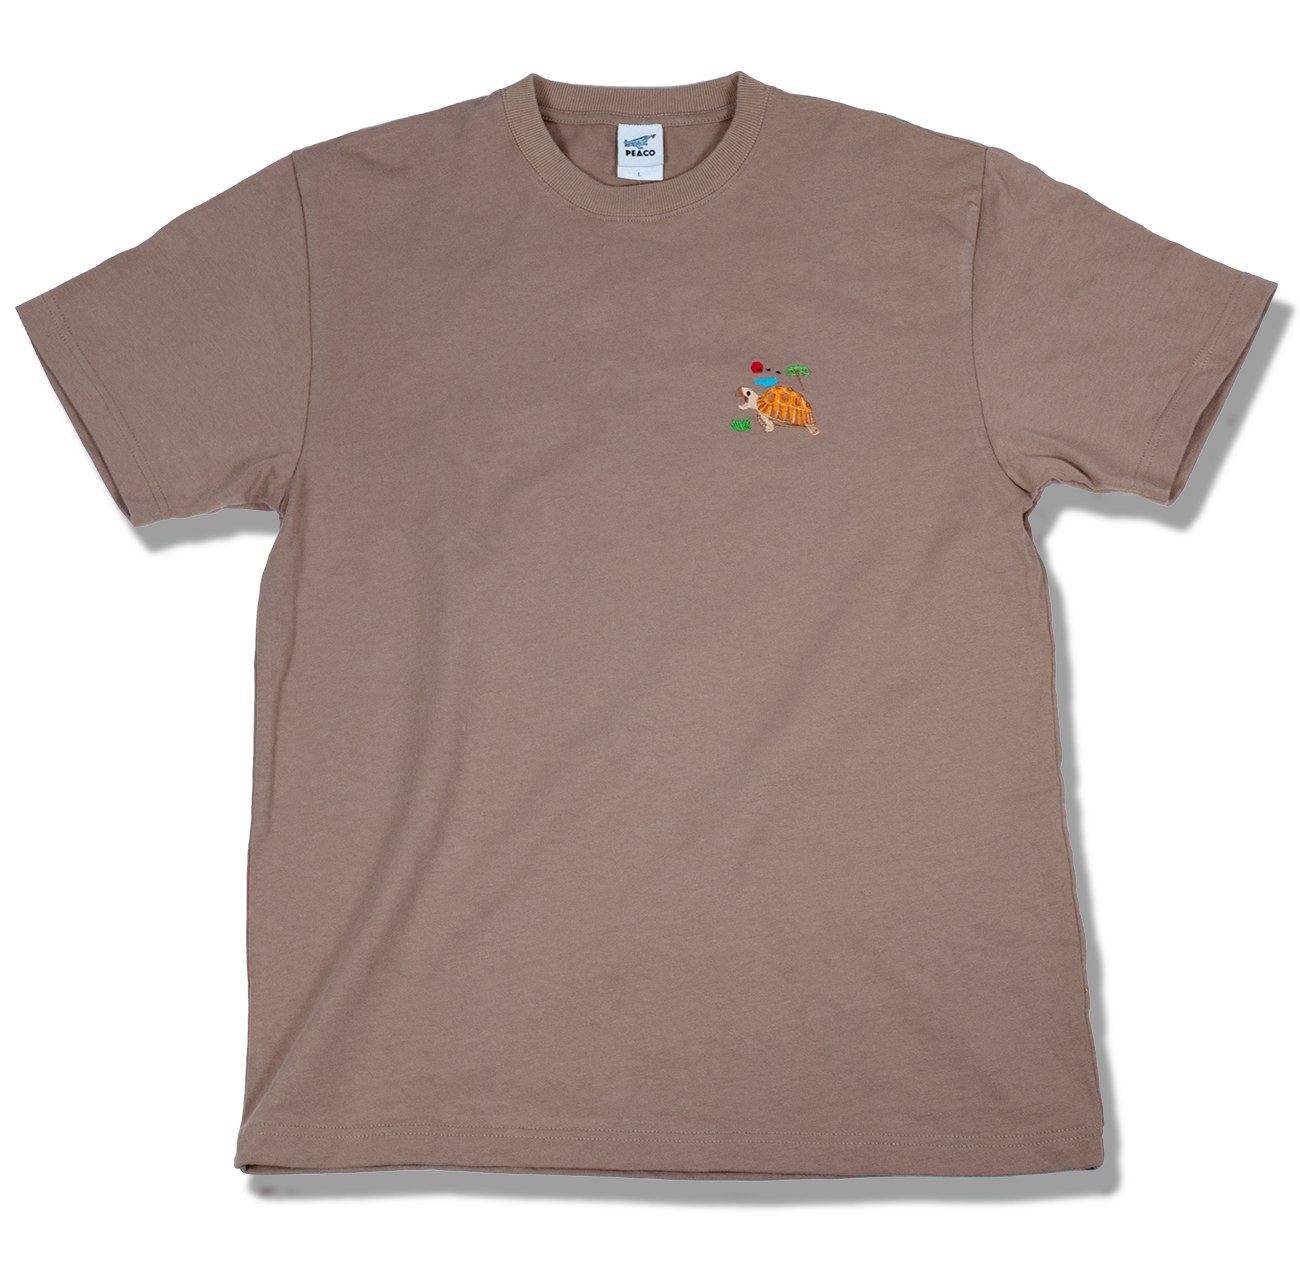 リクガメオーガニックコットン刺繍Tシャツ 8.8oz (丈夫で厚めの生地)